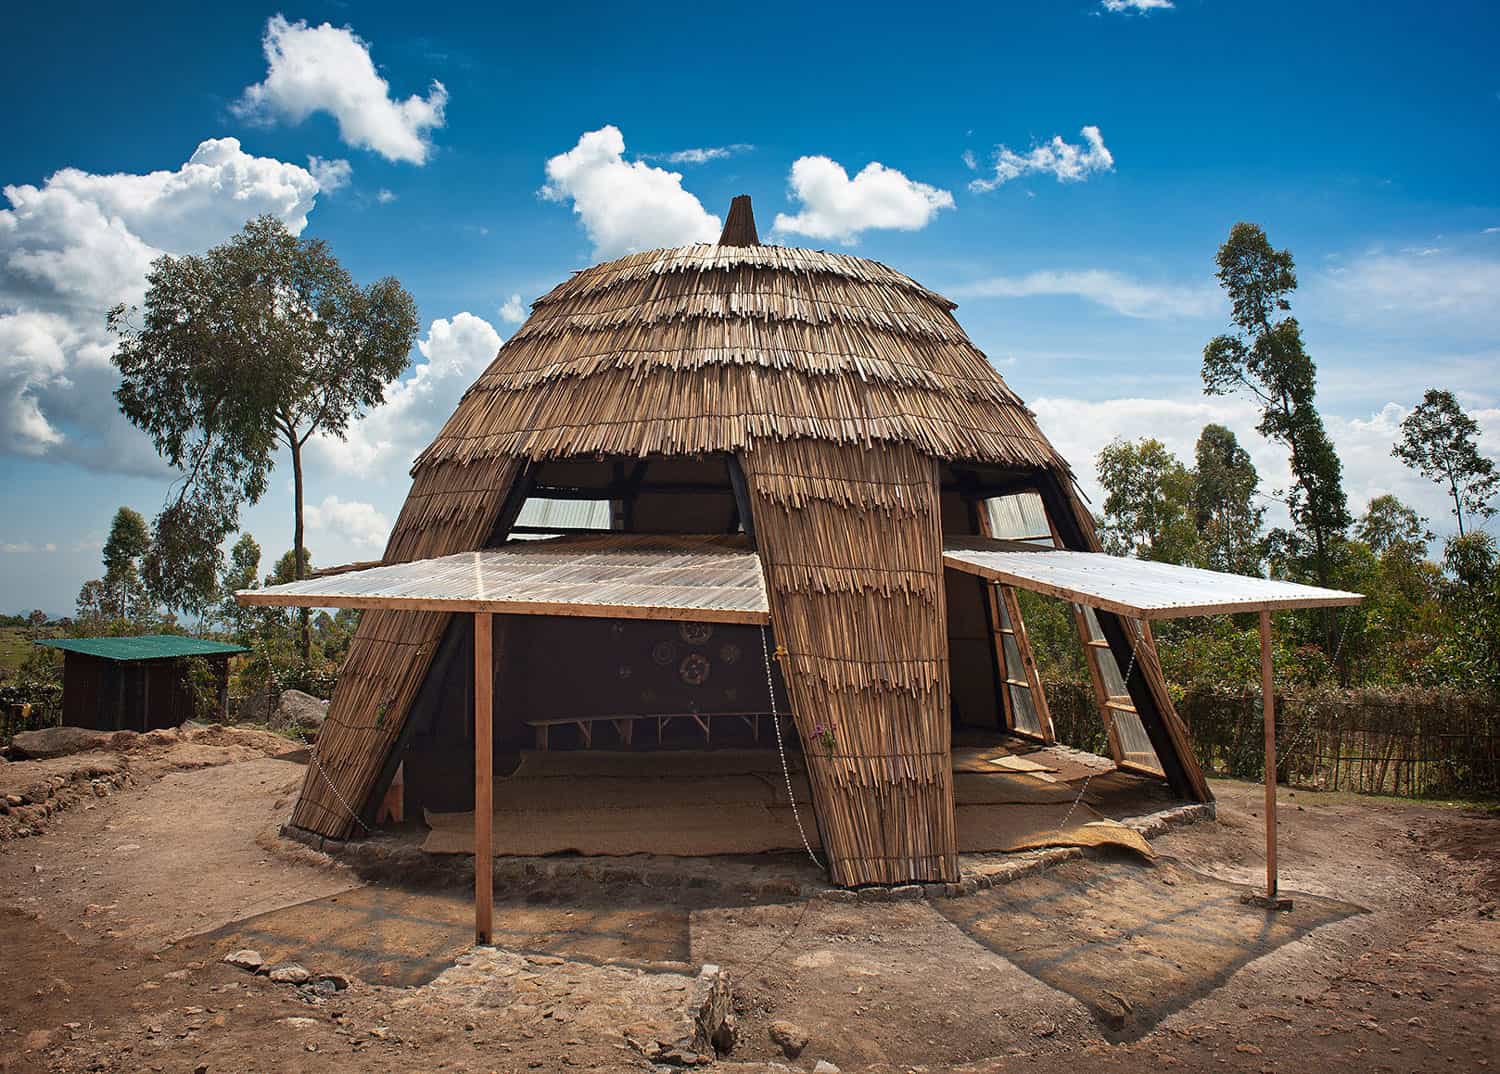 La aldea de Gahinga Batwa de Studio FH da esperanza a un grupo marginado en Uganda.